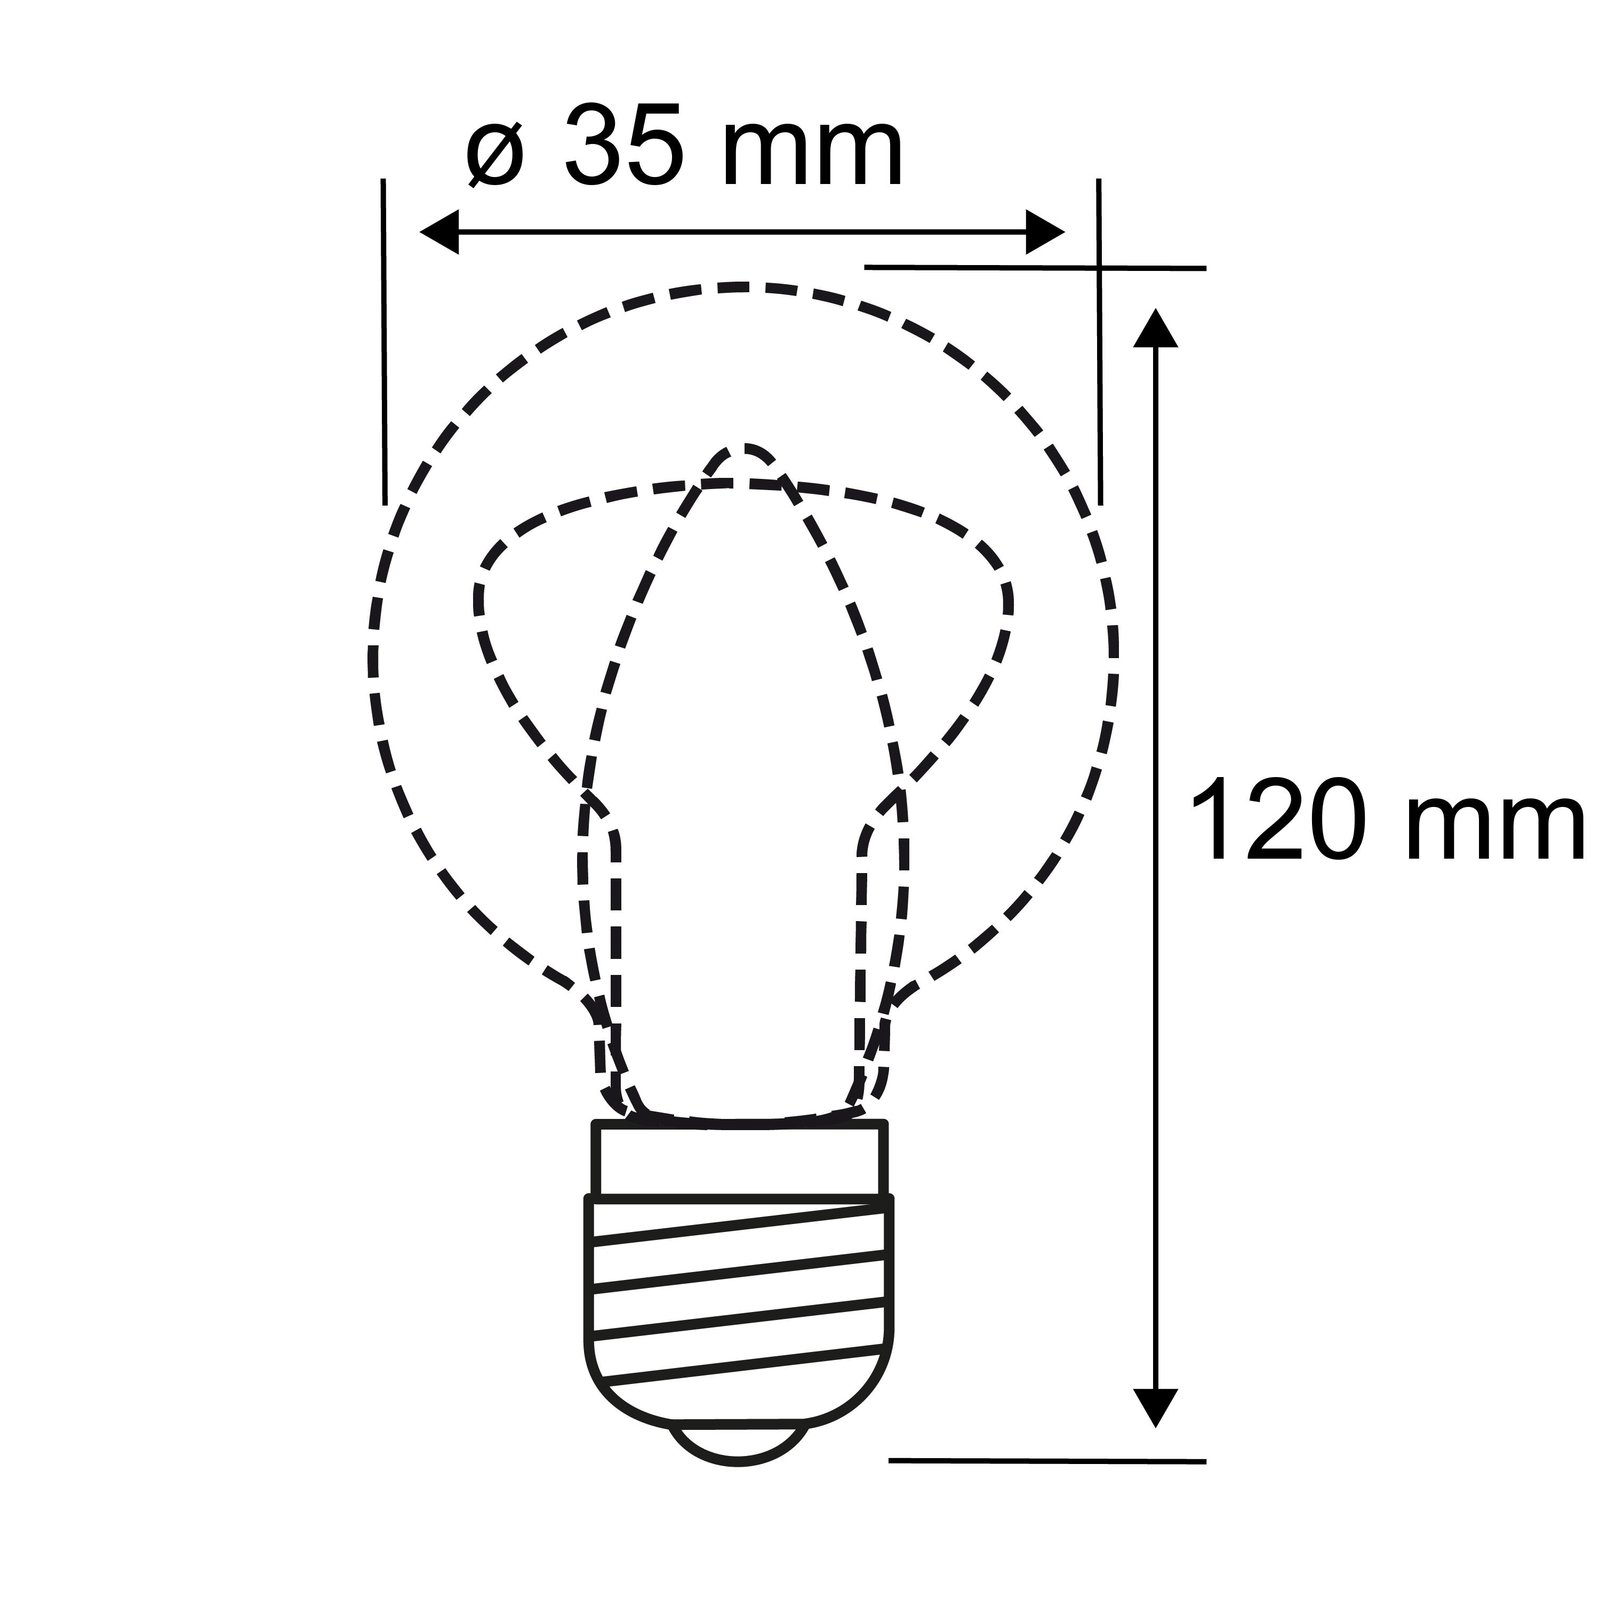 LED-Kerzenlampe E14 4,8W 2.700K Windstoß satin